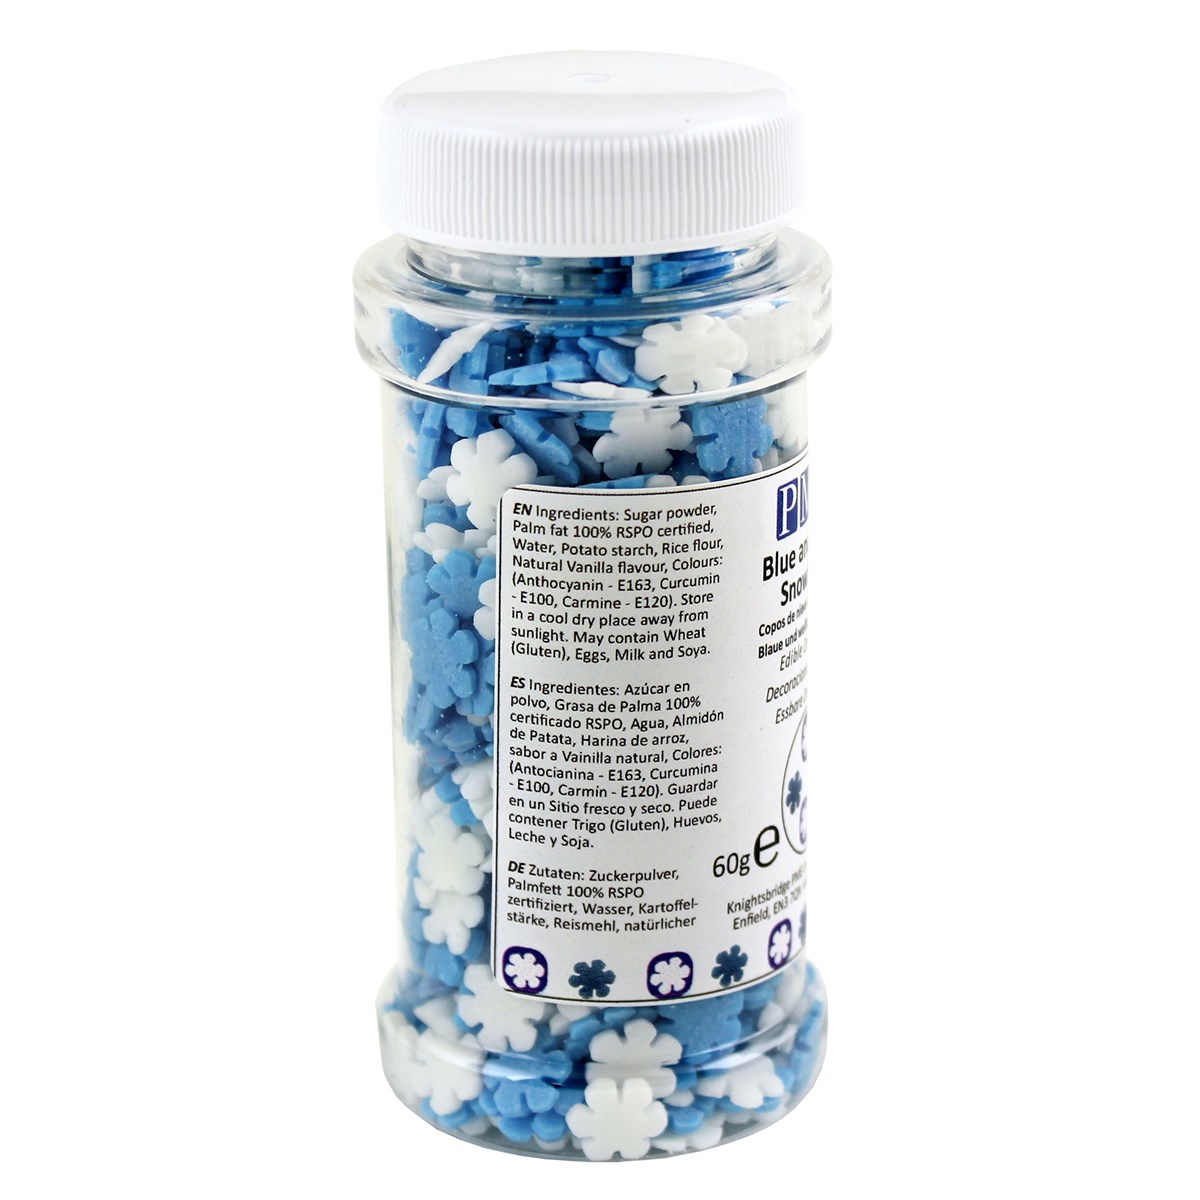 Flocons sucrée décoratifs - Bleu et blanc - PME